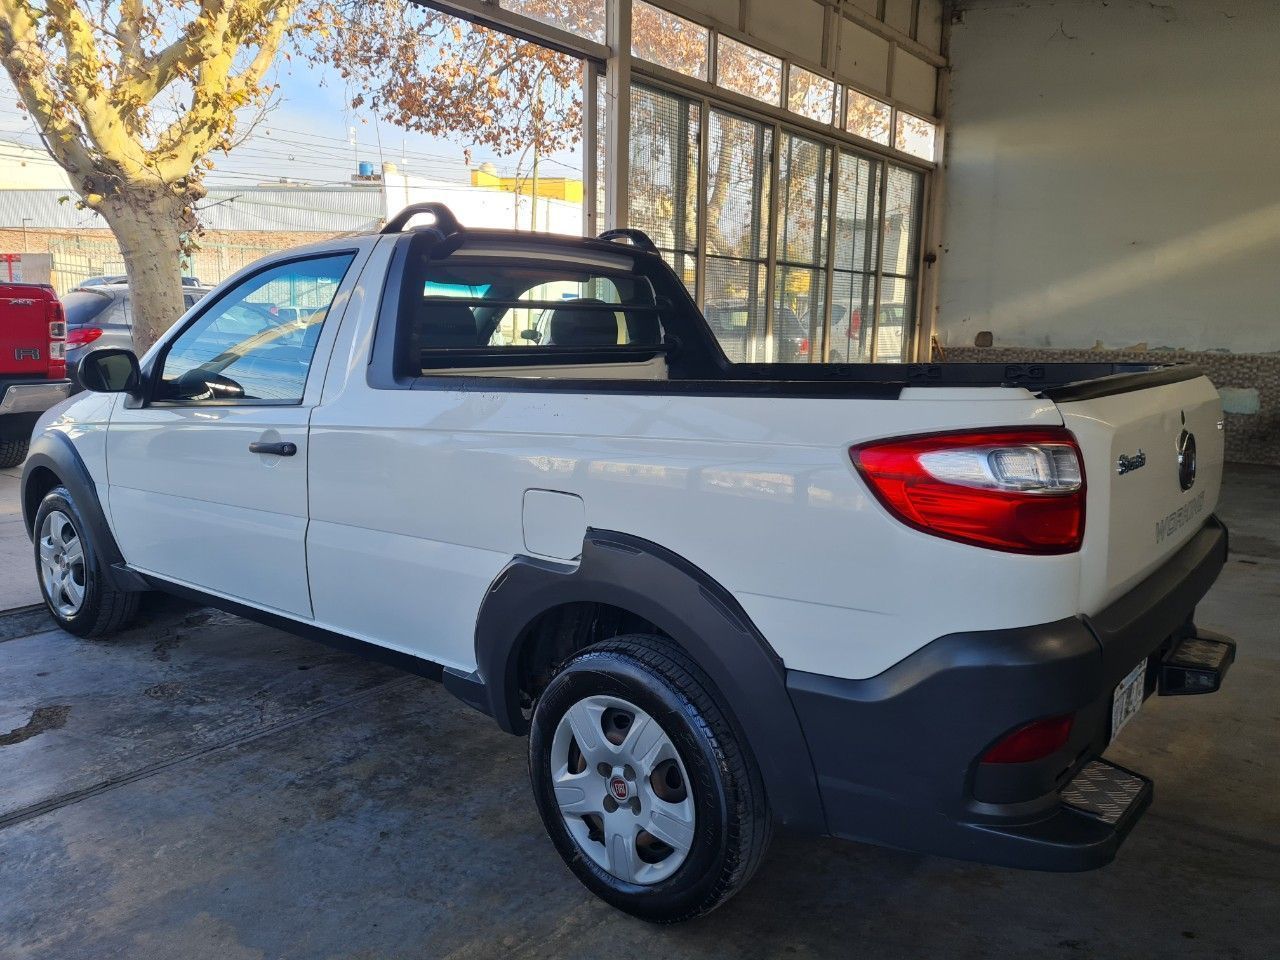 Fiat Strada Usada Financiado en Mendoza, deRuedas